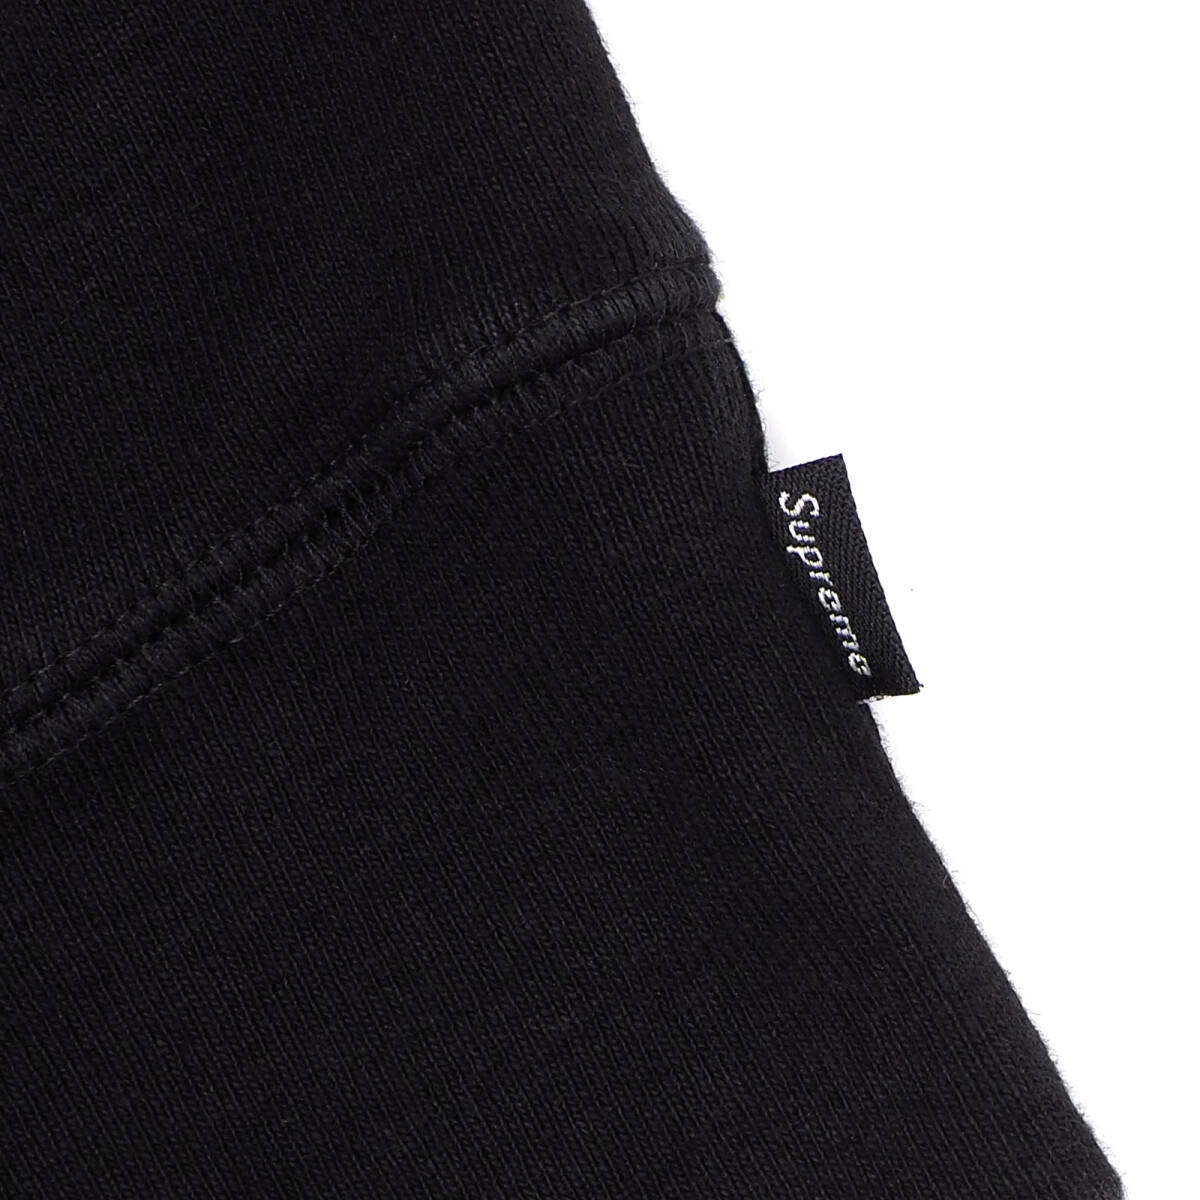 Supreme - Small Box Hooded Sweatshirt 黒L シュプリーム - スモール ボックス フーデッド スウェットシャツ 2022FWの画像4